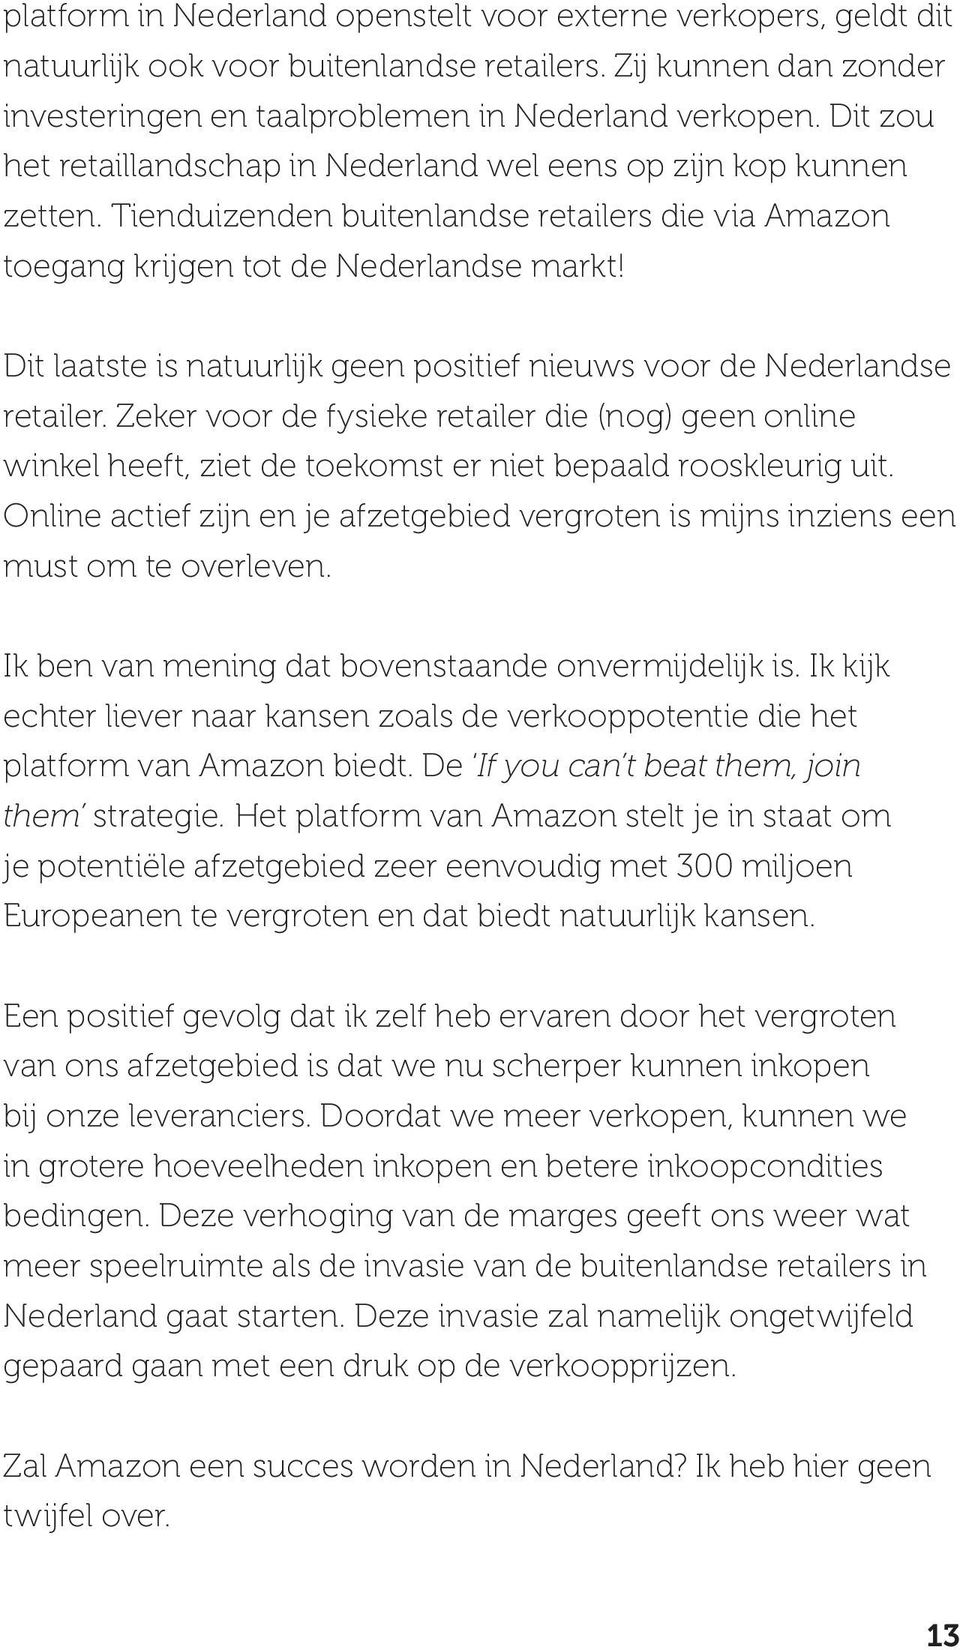 Dit laatste is natuurlijk geen positief nieuws voor de Nederlandse retailer. Zeker voor de fysieke retailer die (nog) geen online winkel heeft, ziet de toekomst er niet bepaald rooskleurig uit.